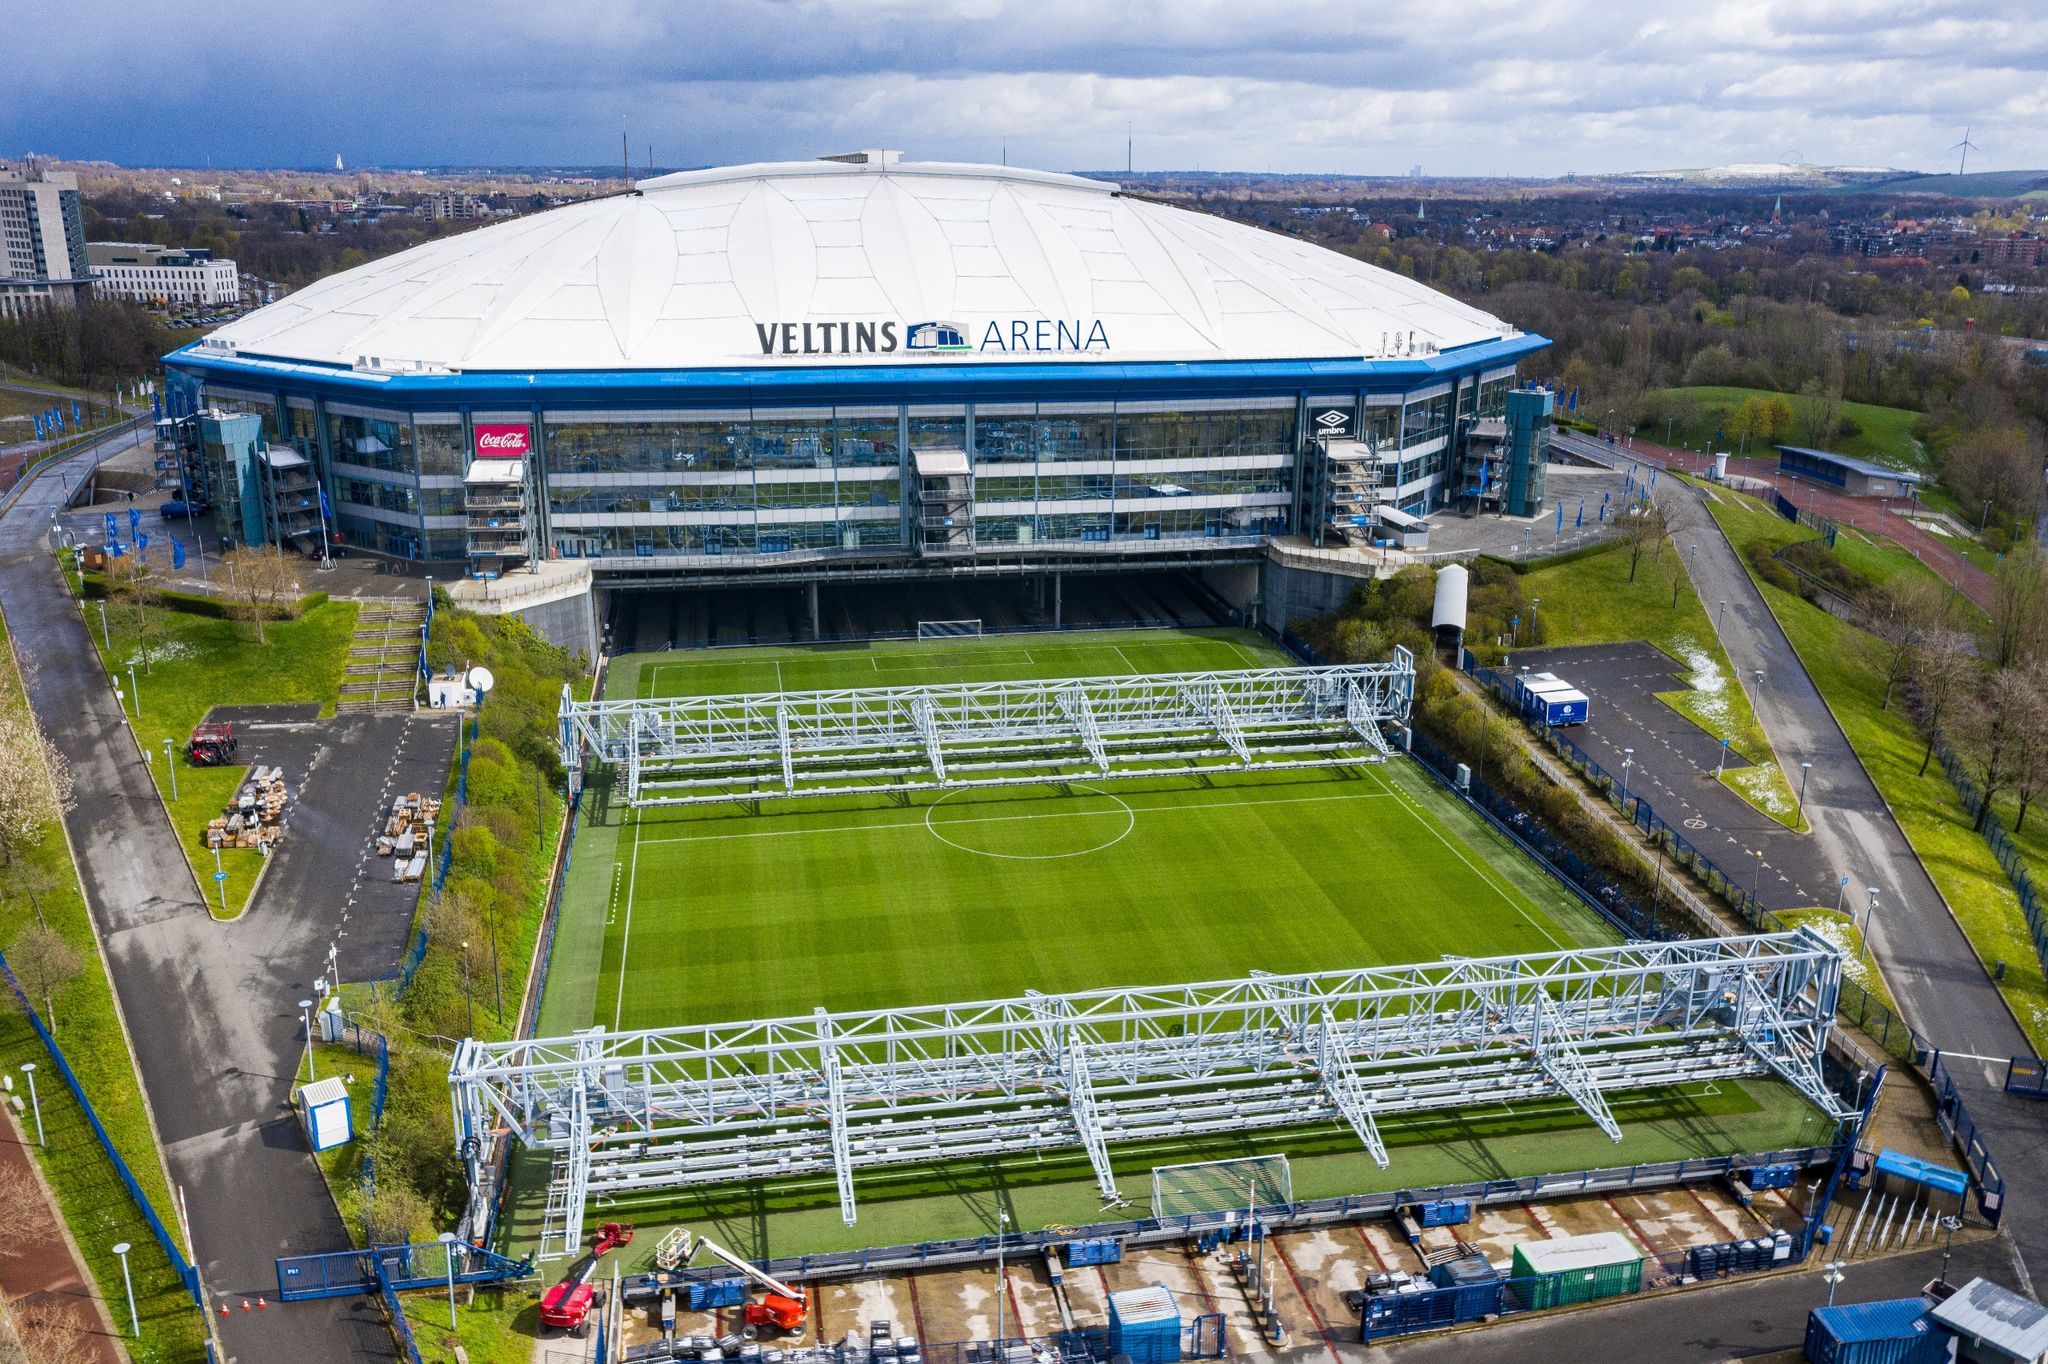 Blaupause für ein modernes Multifunktionsstadion: Der Rasen kann aus der Veltins-Arena herausgefahren werden.